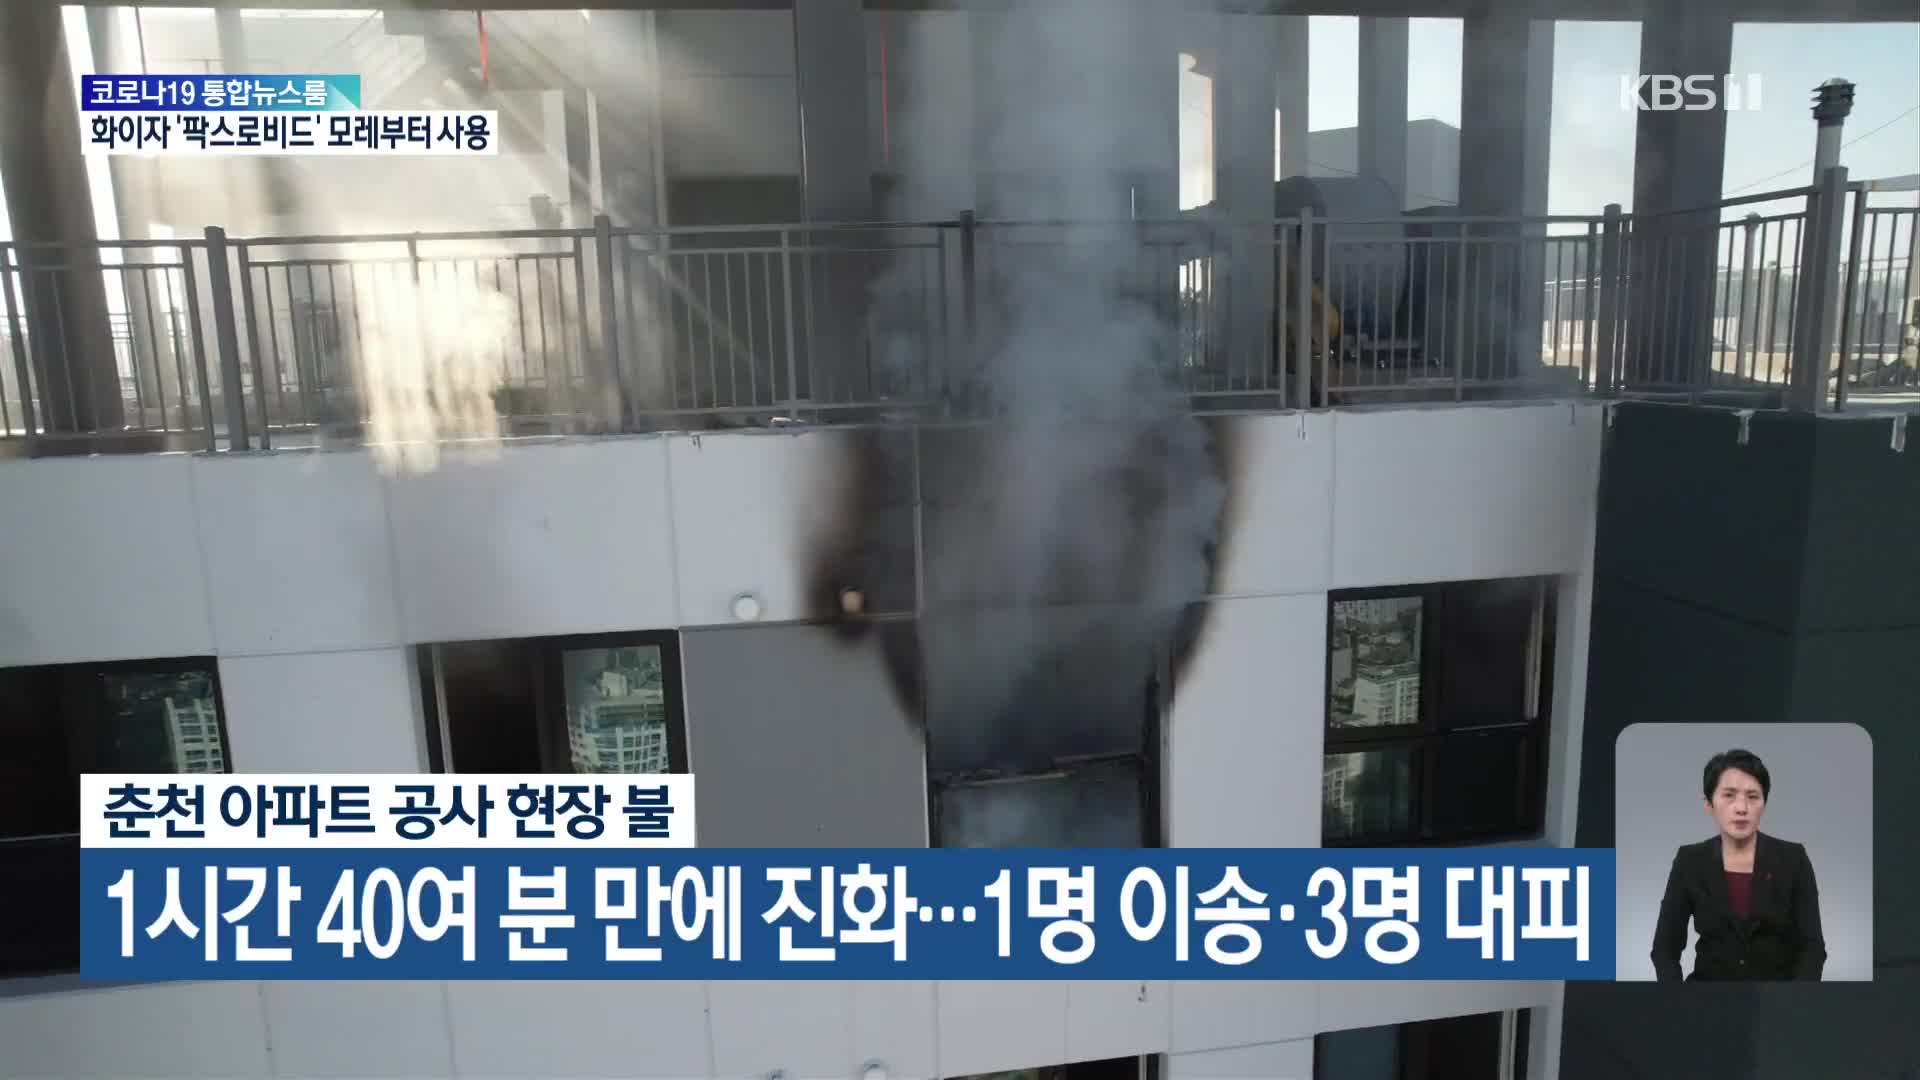 춘천 아파트 공사 현장 불, 1시간 40여분 만에 진화…1명 이송·3명 대피